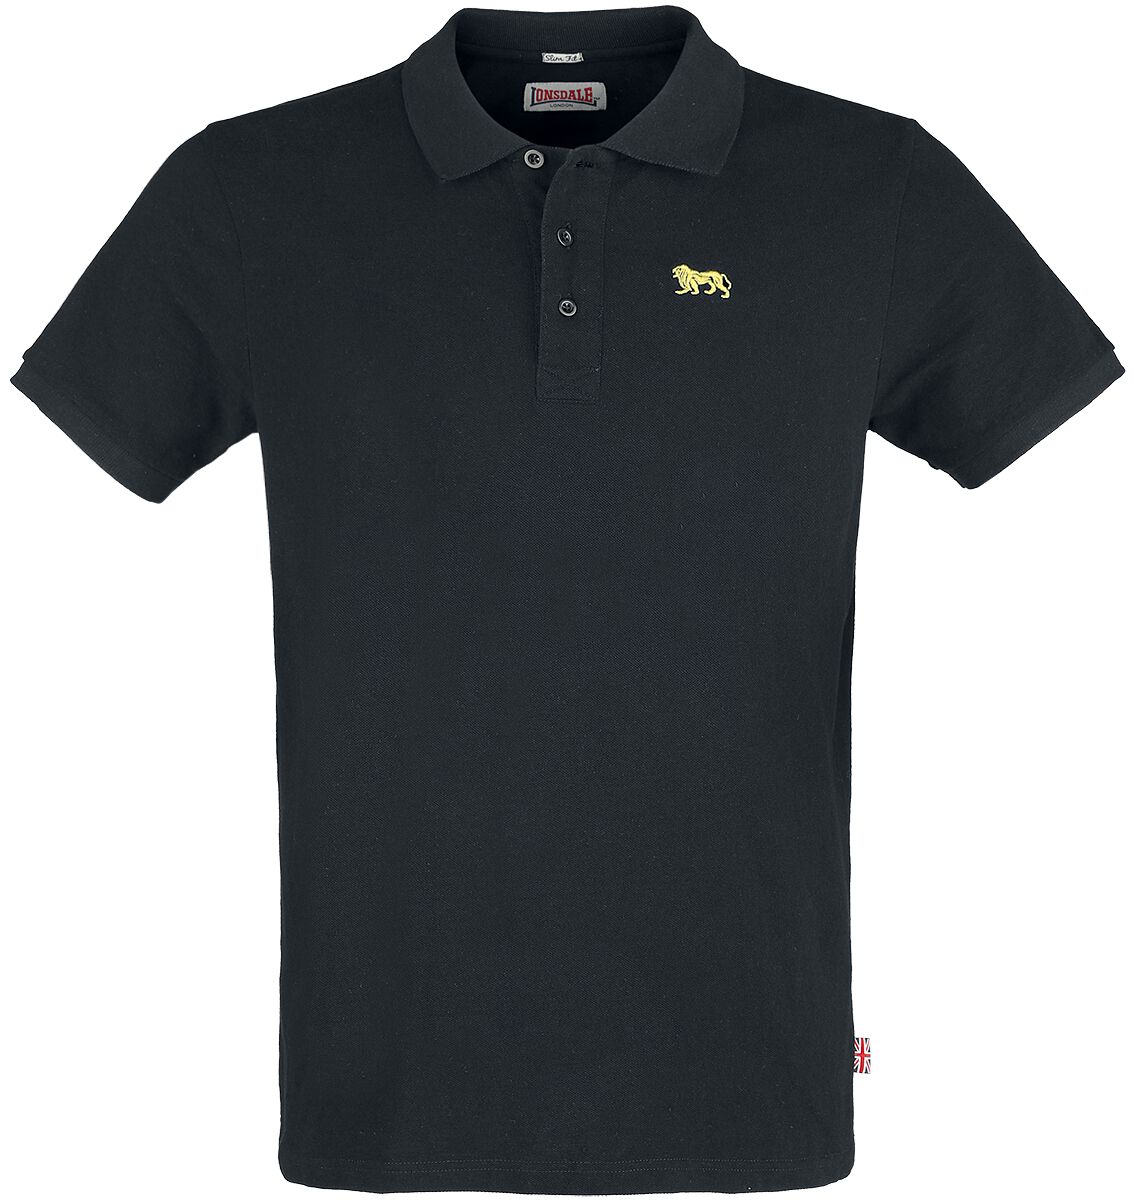 Lonsdale London Poloshirt - Whalton - S bis XXL - für Männer - Größe M - schwarz